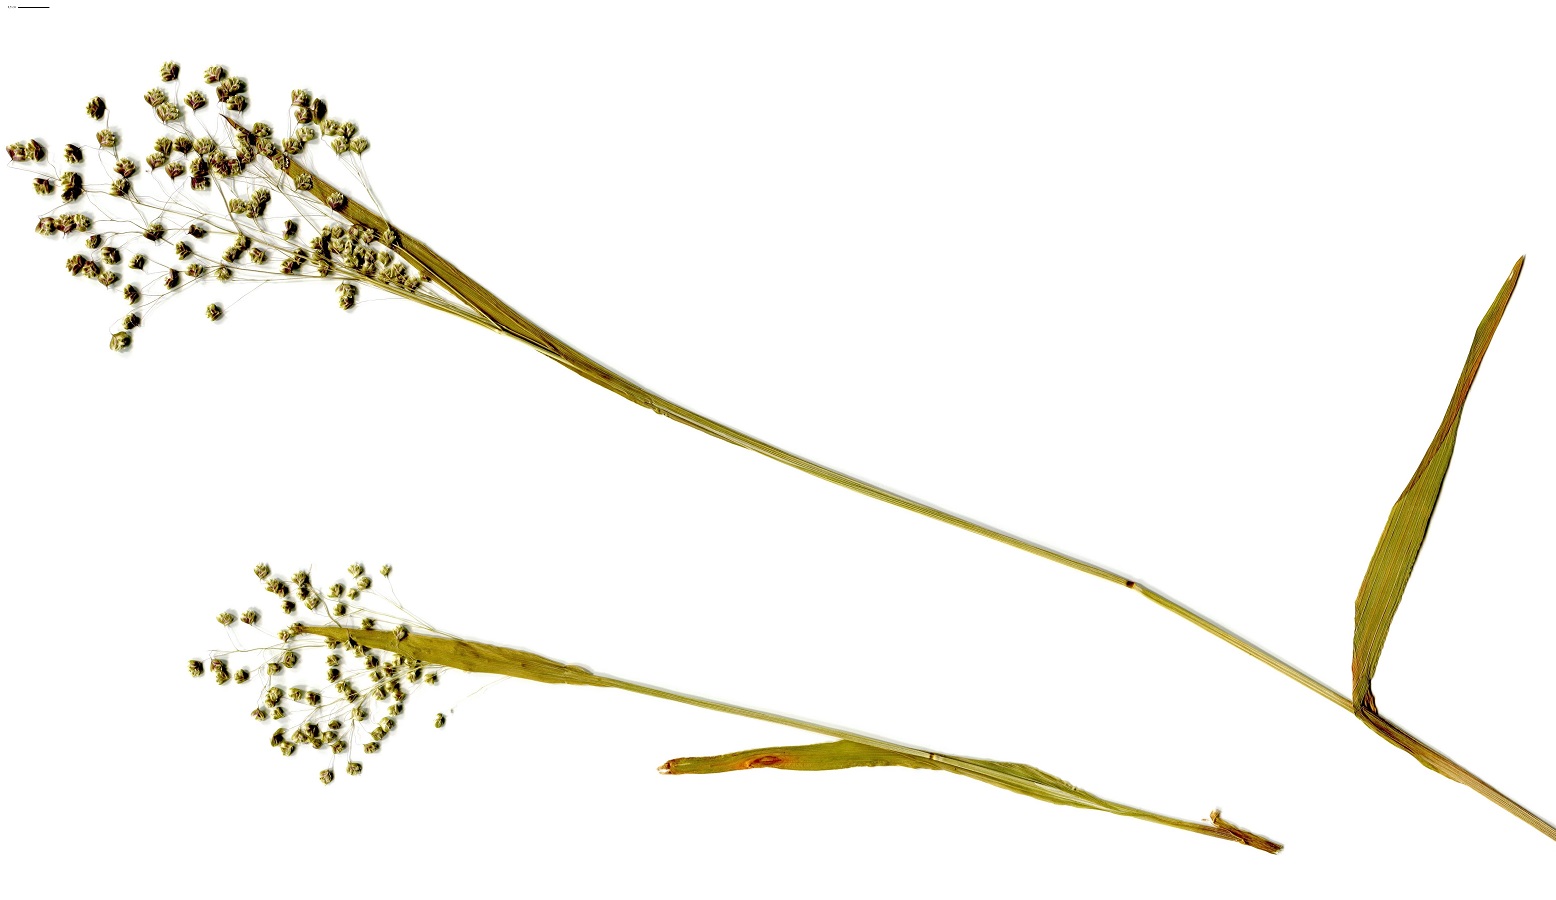 Briza minor (Poaceae)